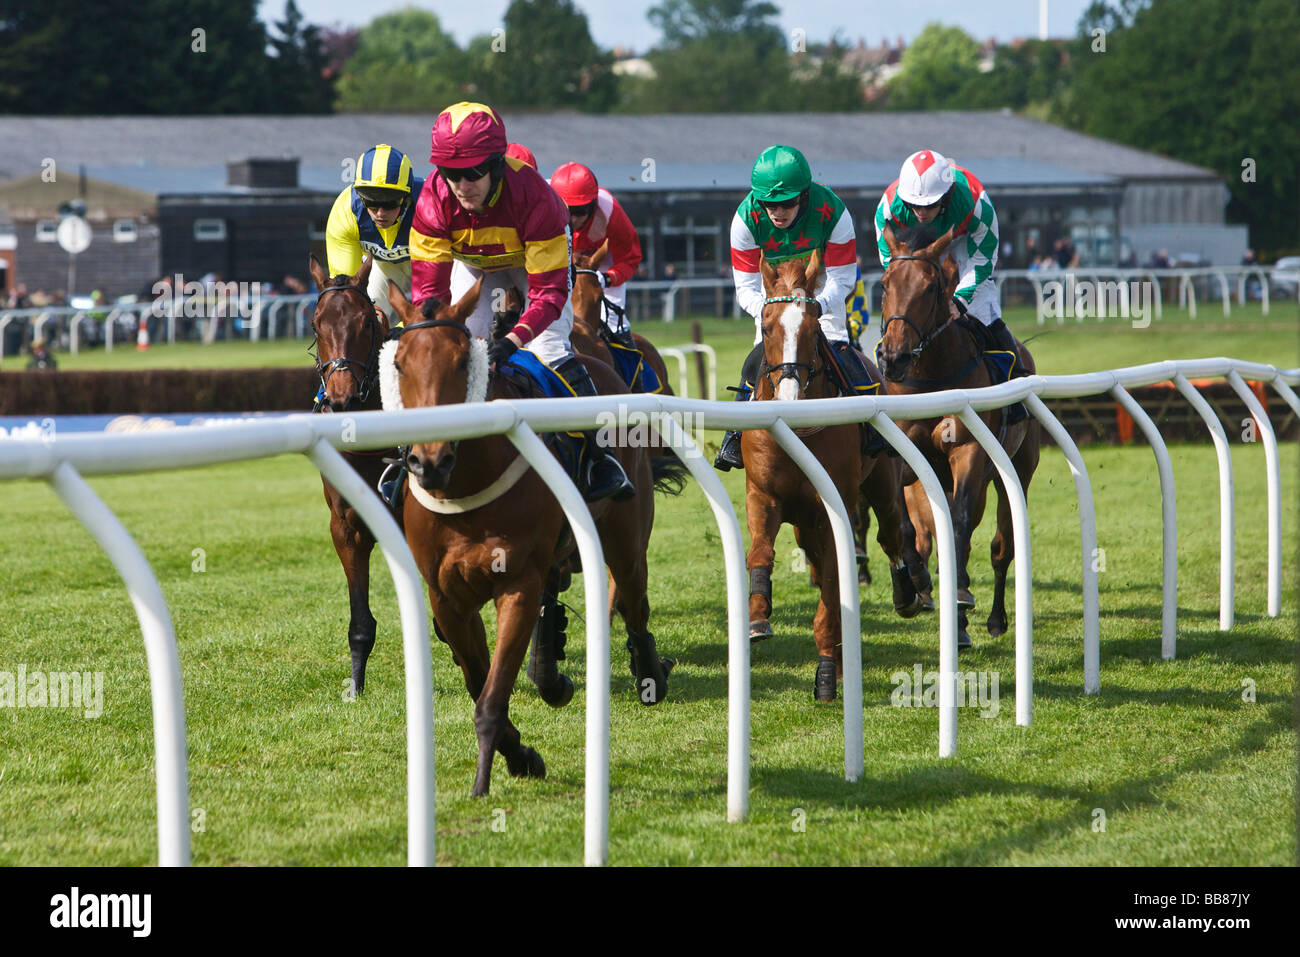 Horse racing at Fakenham Stock Photo